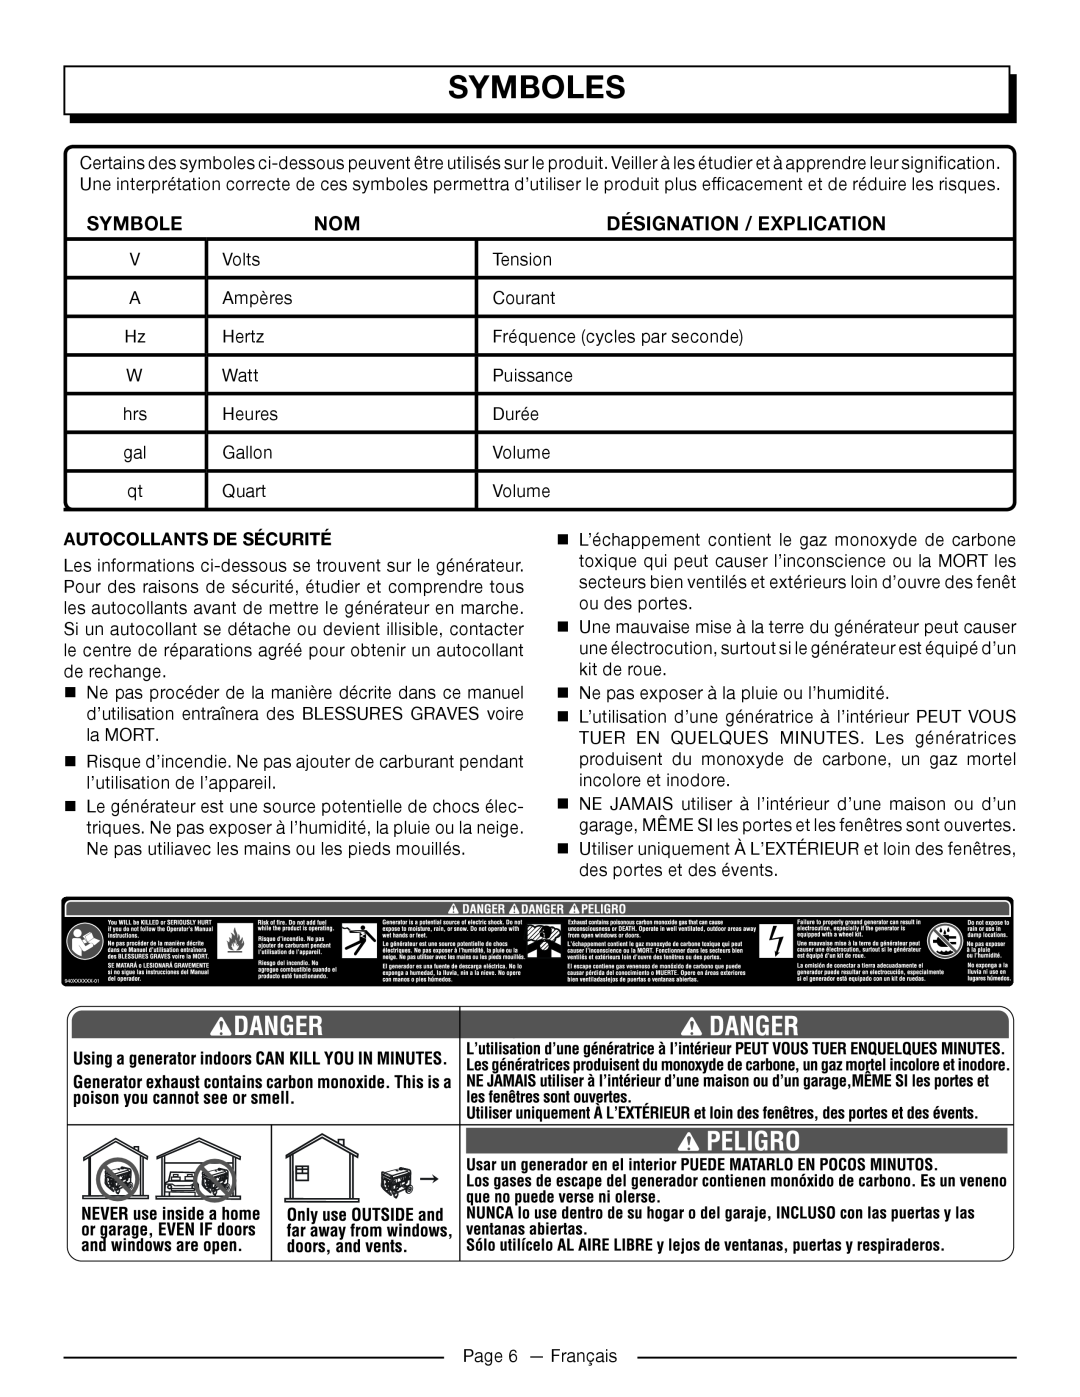 Homelite UT905011 manuel dutilisation Autocollants De Sécurité, Symboles, Désignation / Explication 